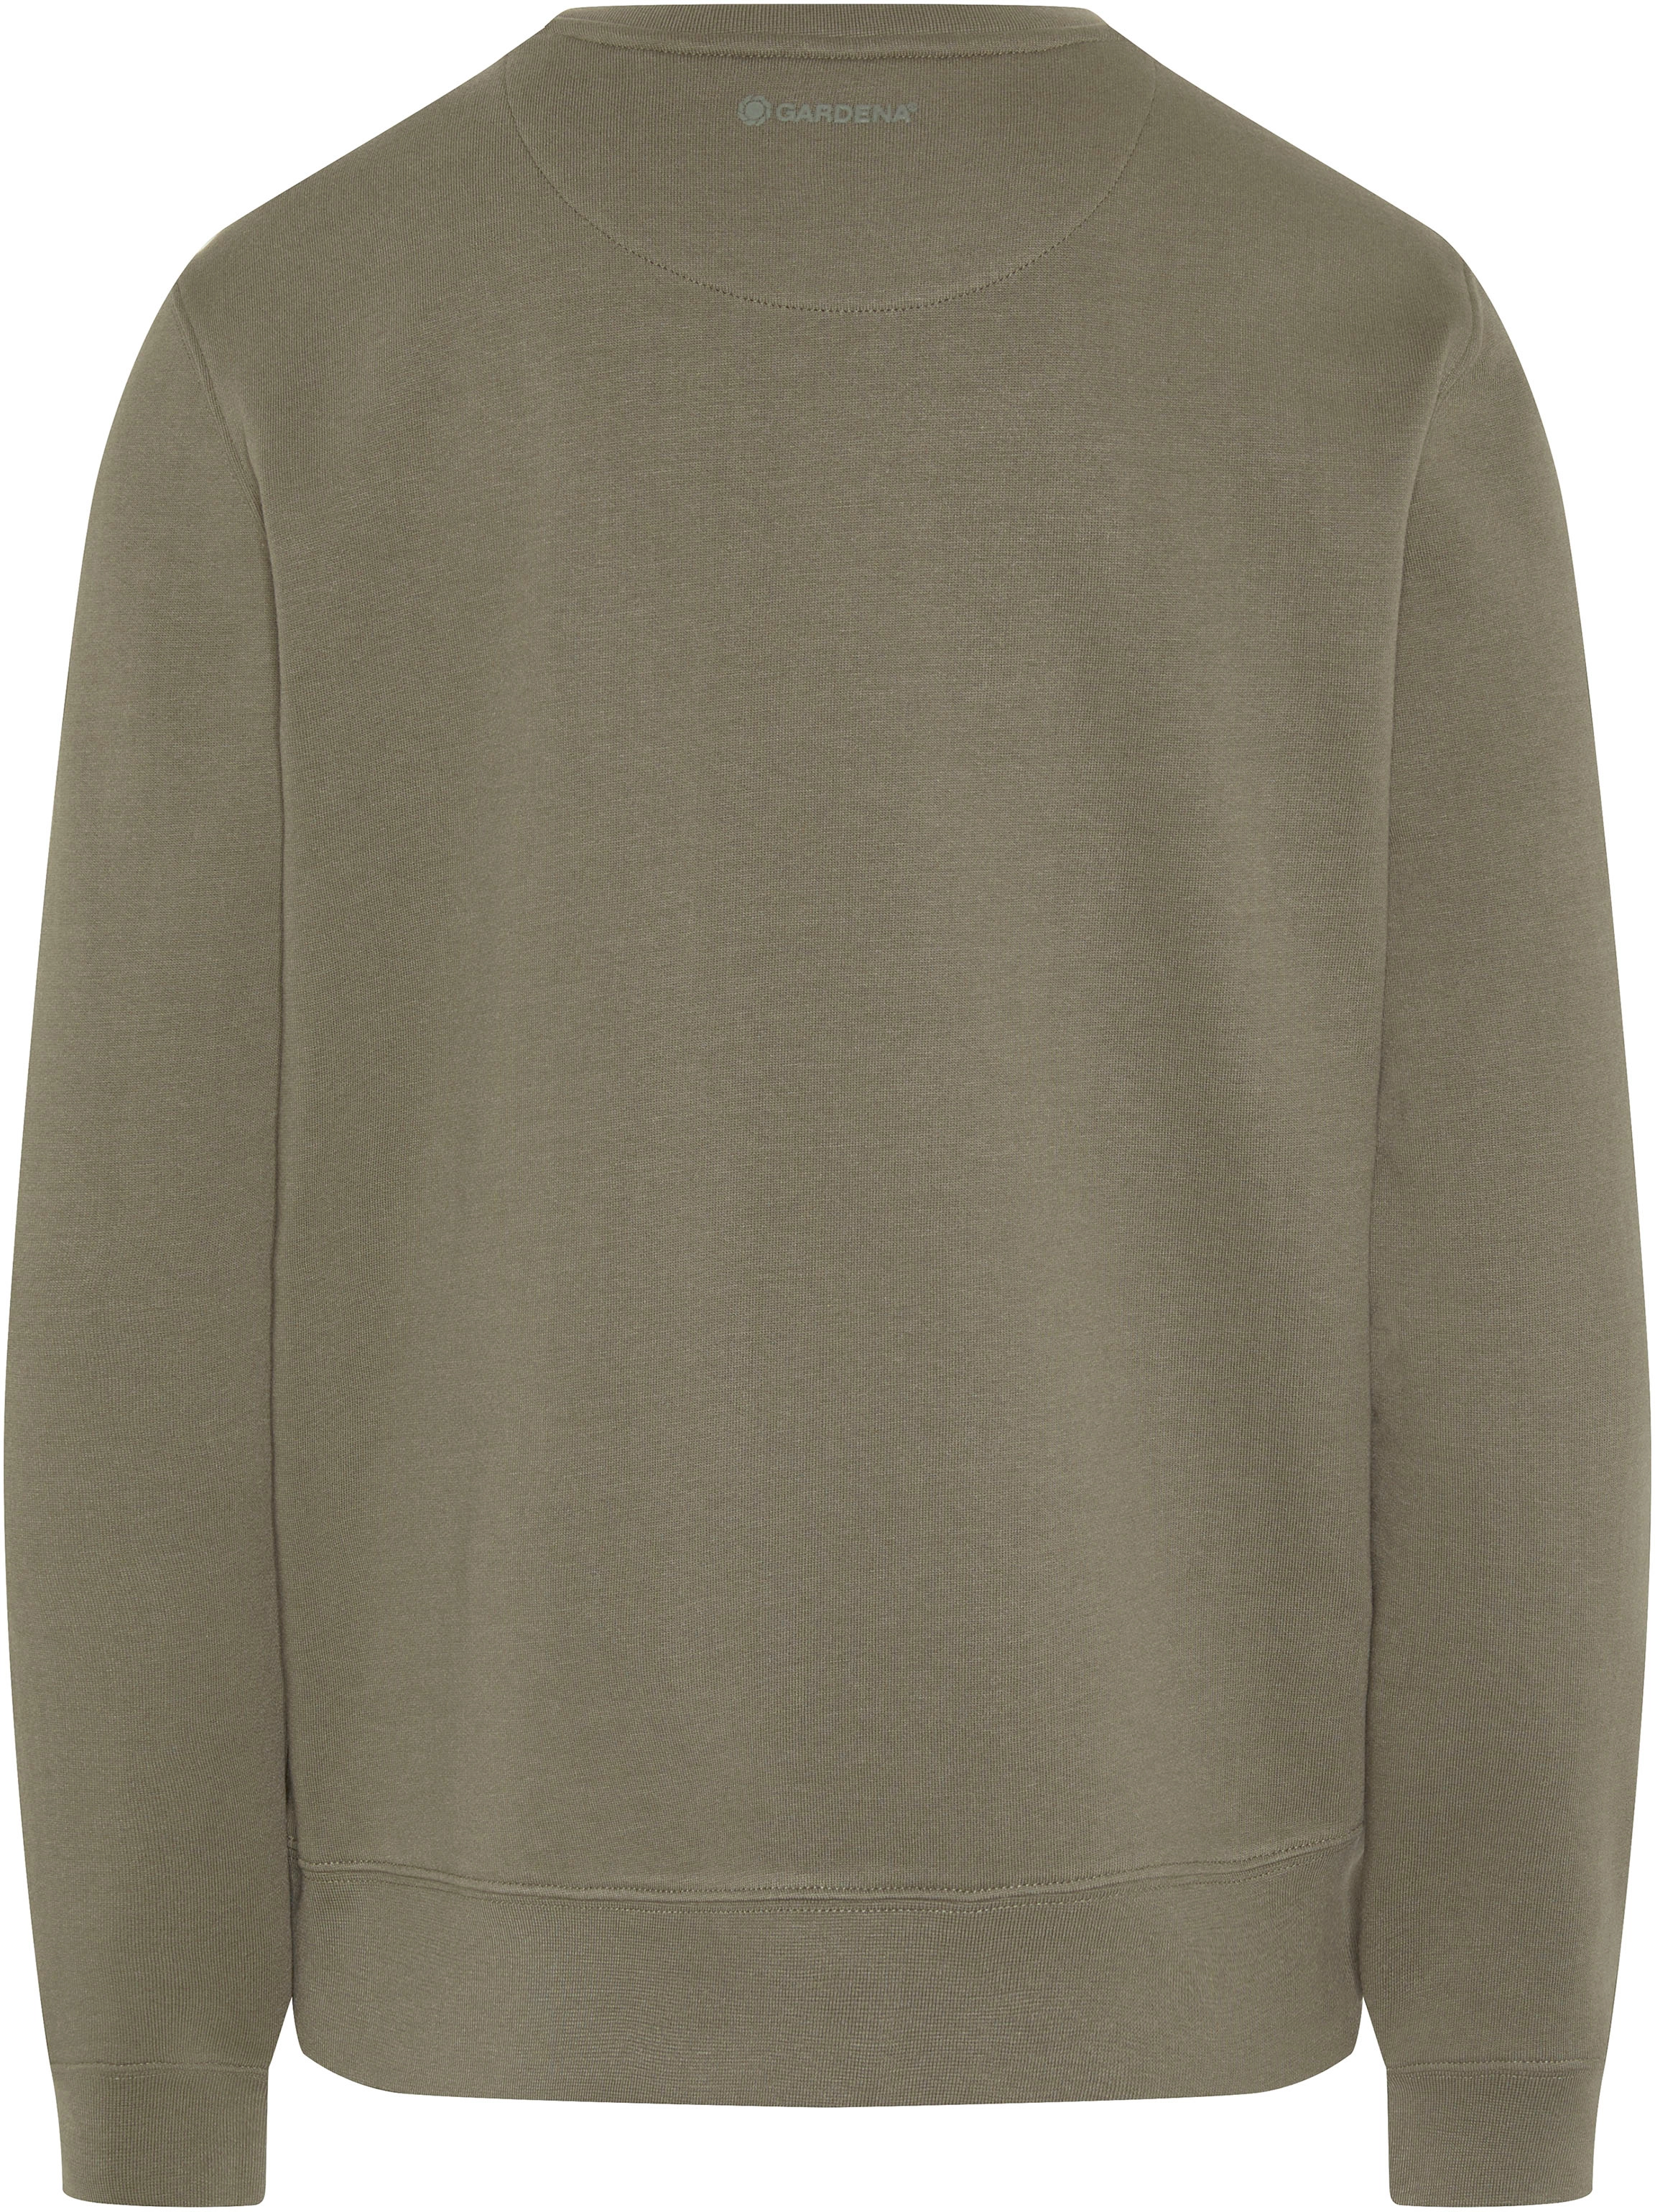 Gardena Damen-Sweatshirt XS Dusty Olive kaufen bei OBI